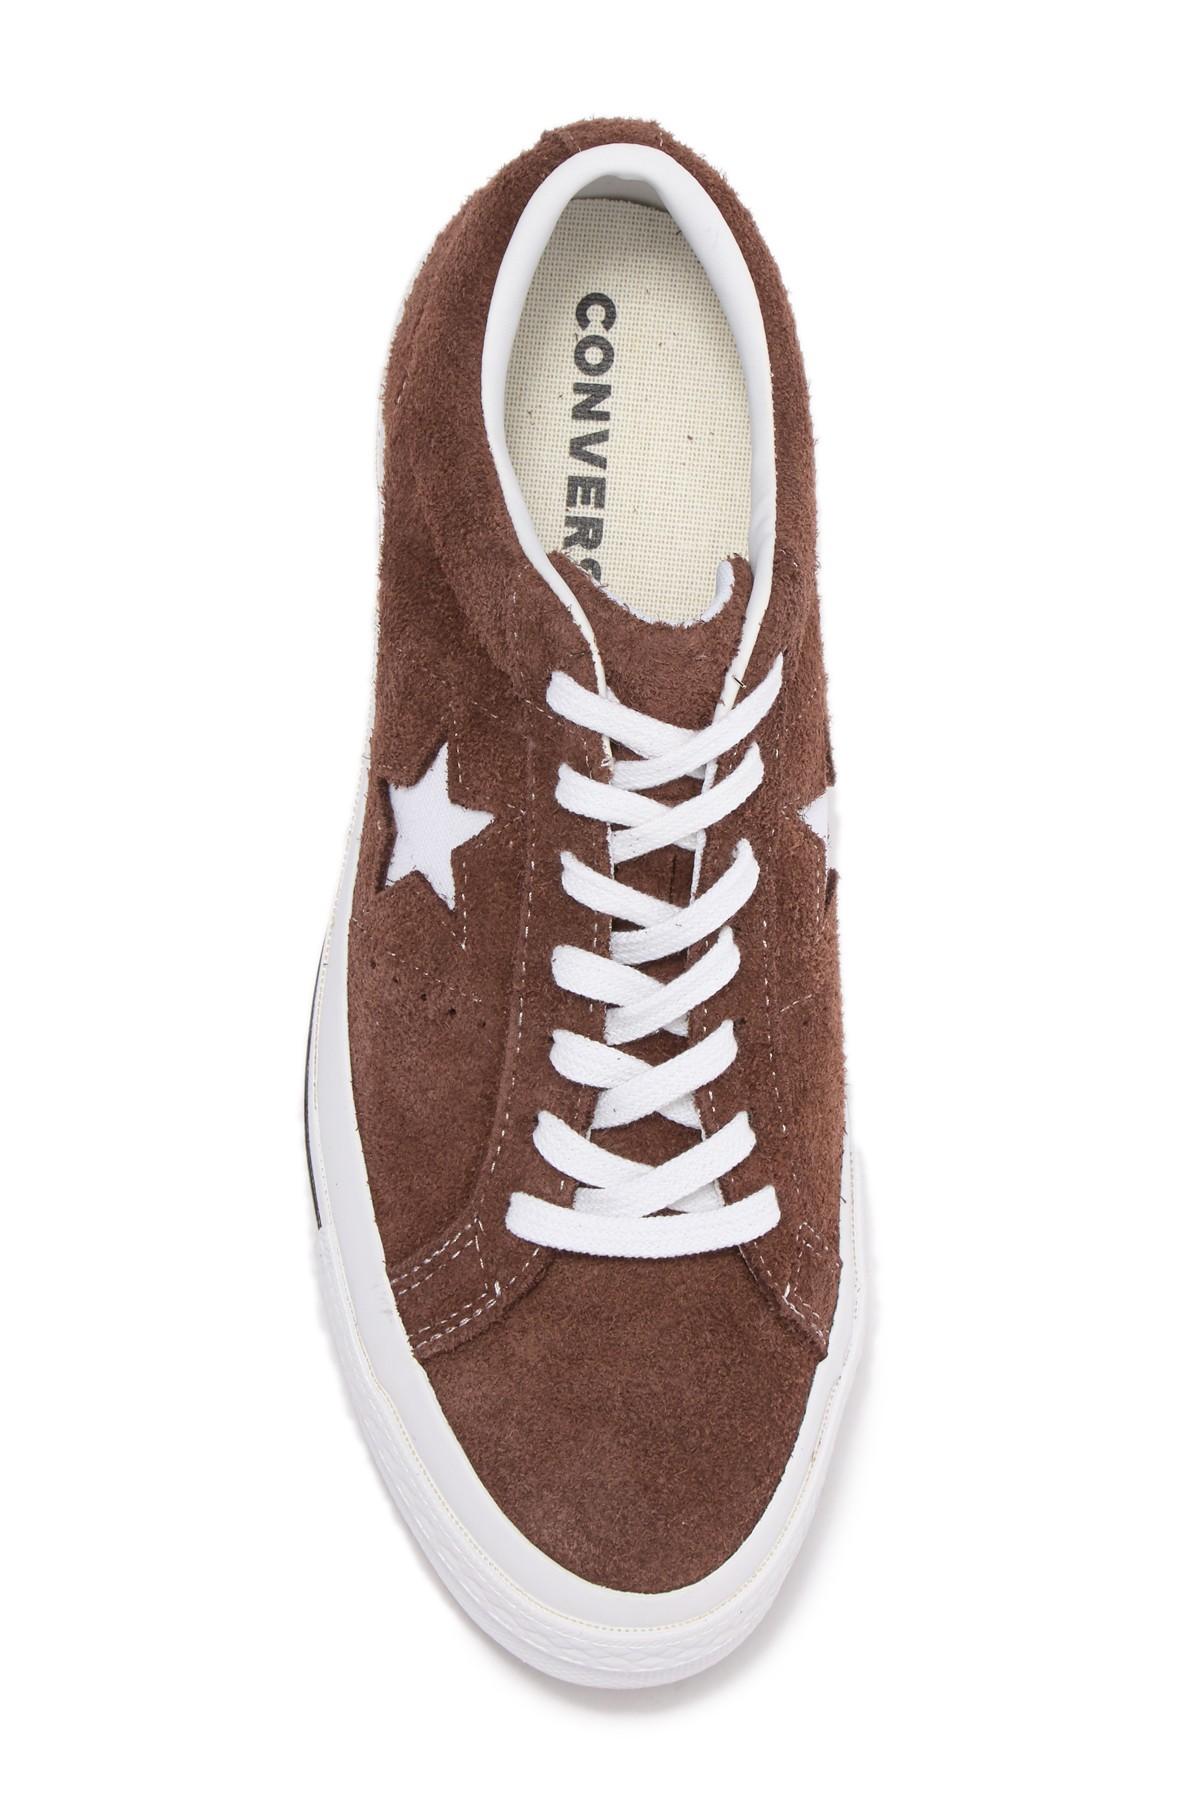 converse brown sneakers